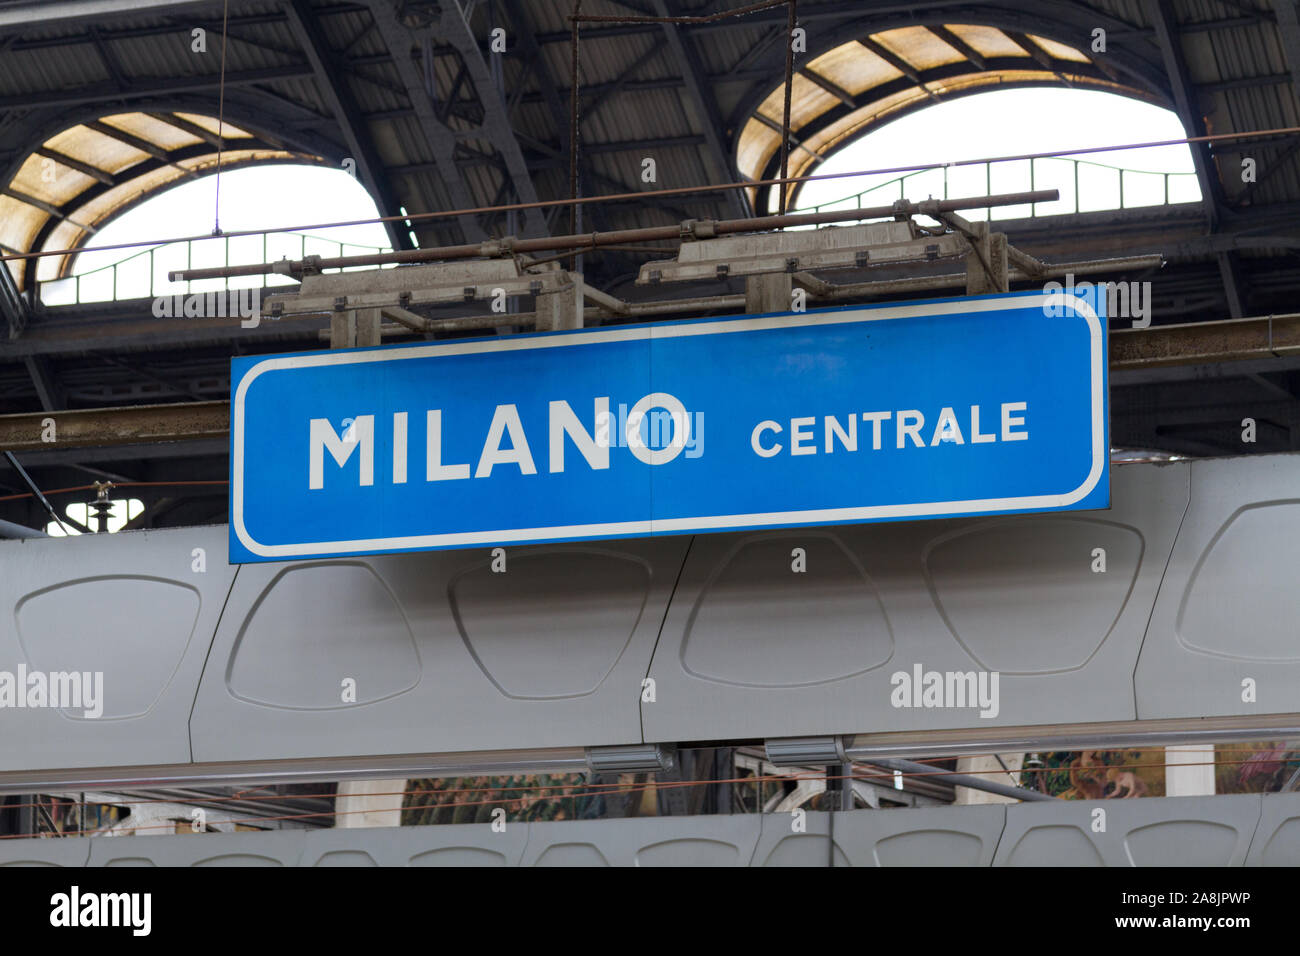 La gare centrale de Milan, un important noeud ferroviaire du nord de l'Italie. Banque D'Images